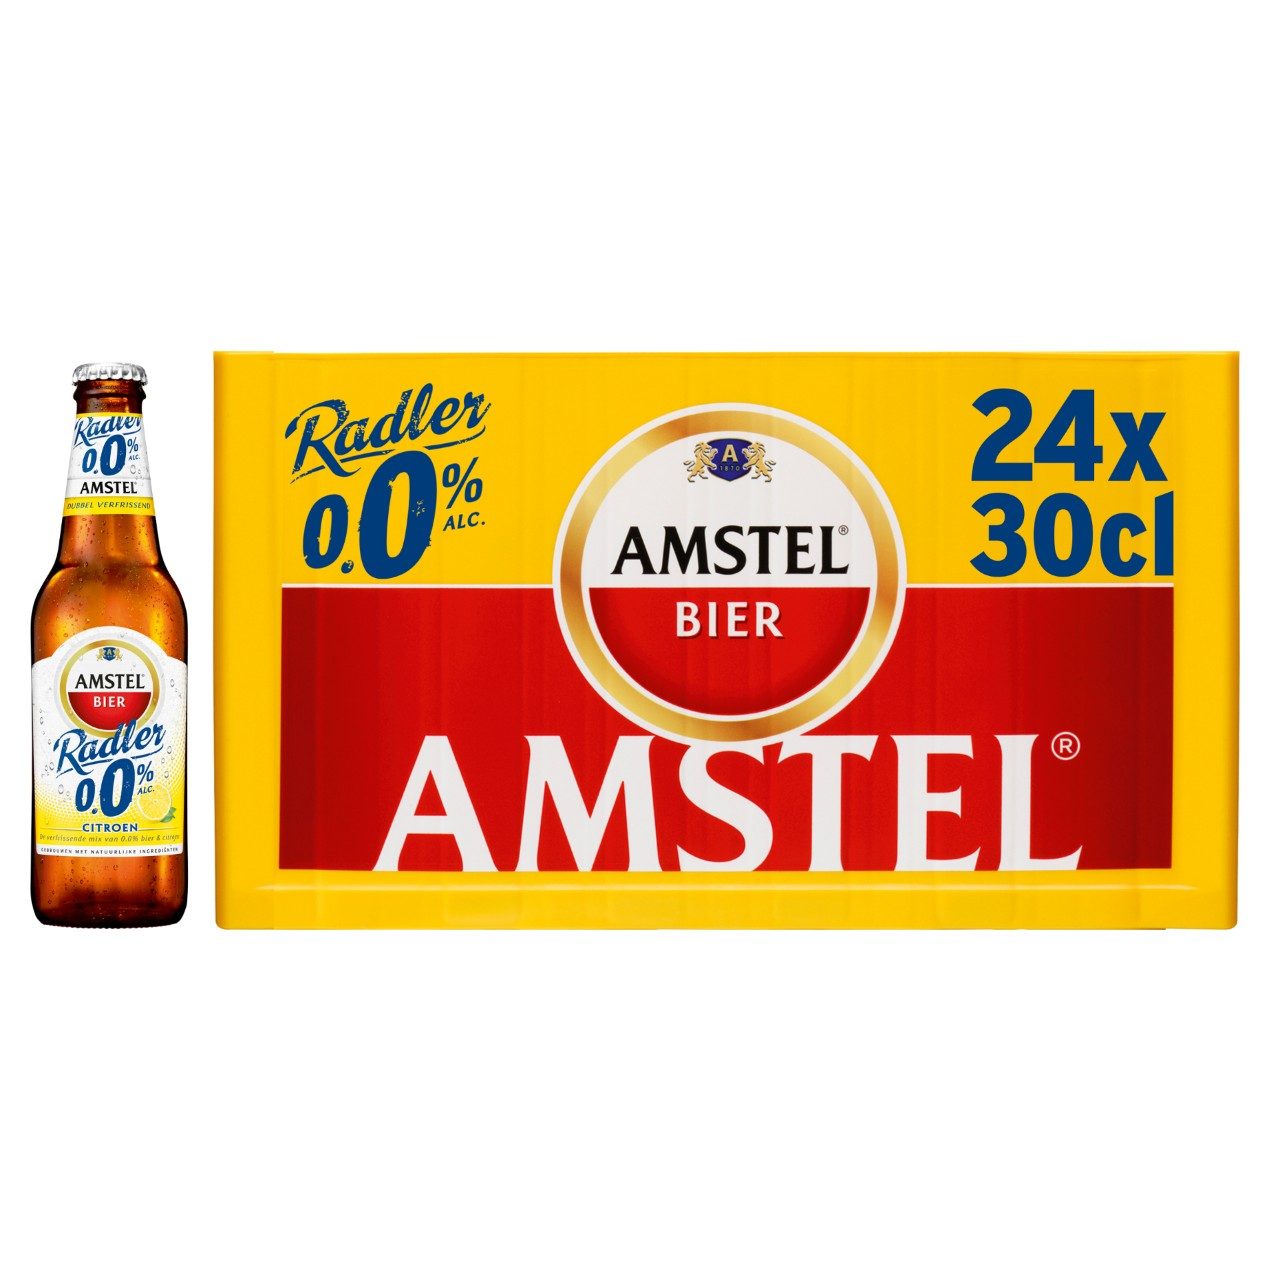 Amstel Radler 0.0% 24 30 | dekweker.nl